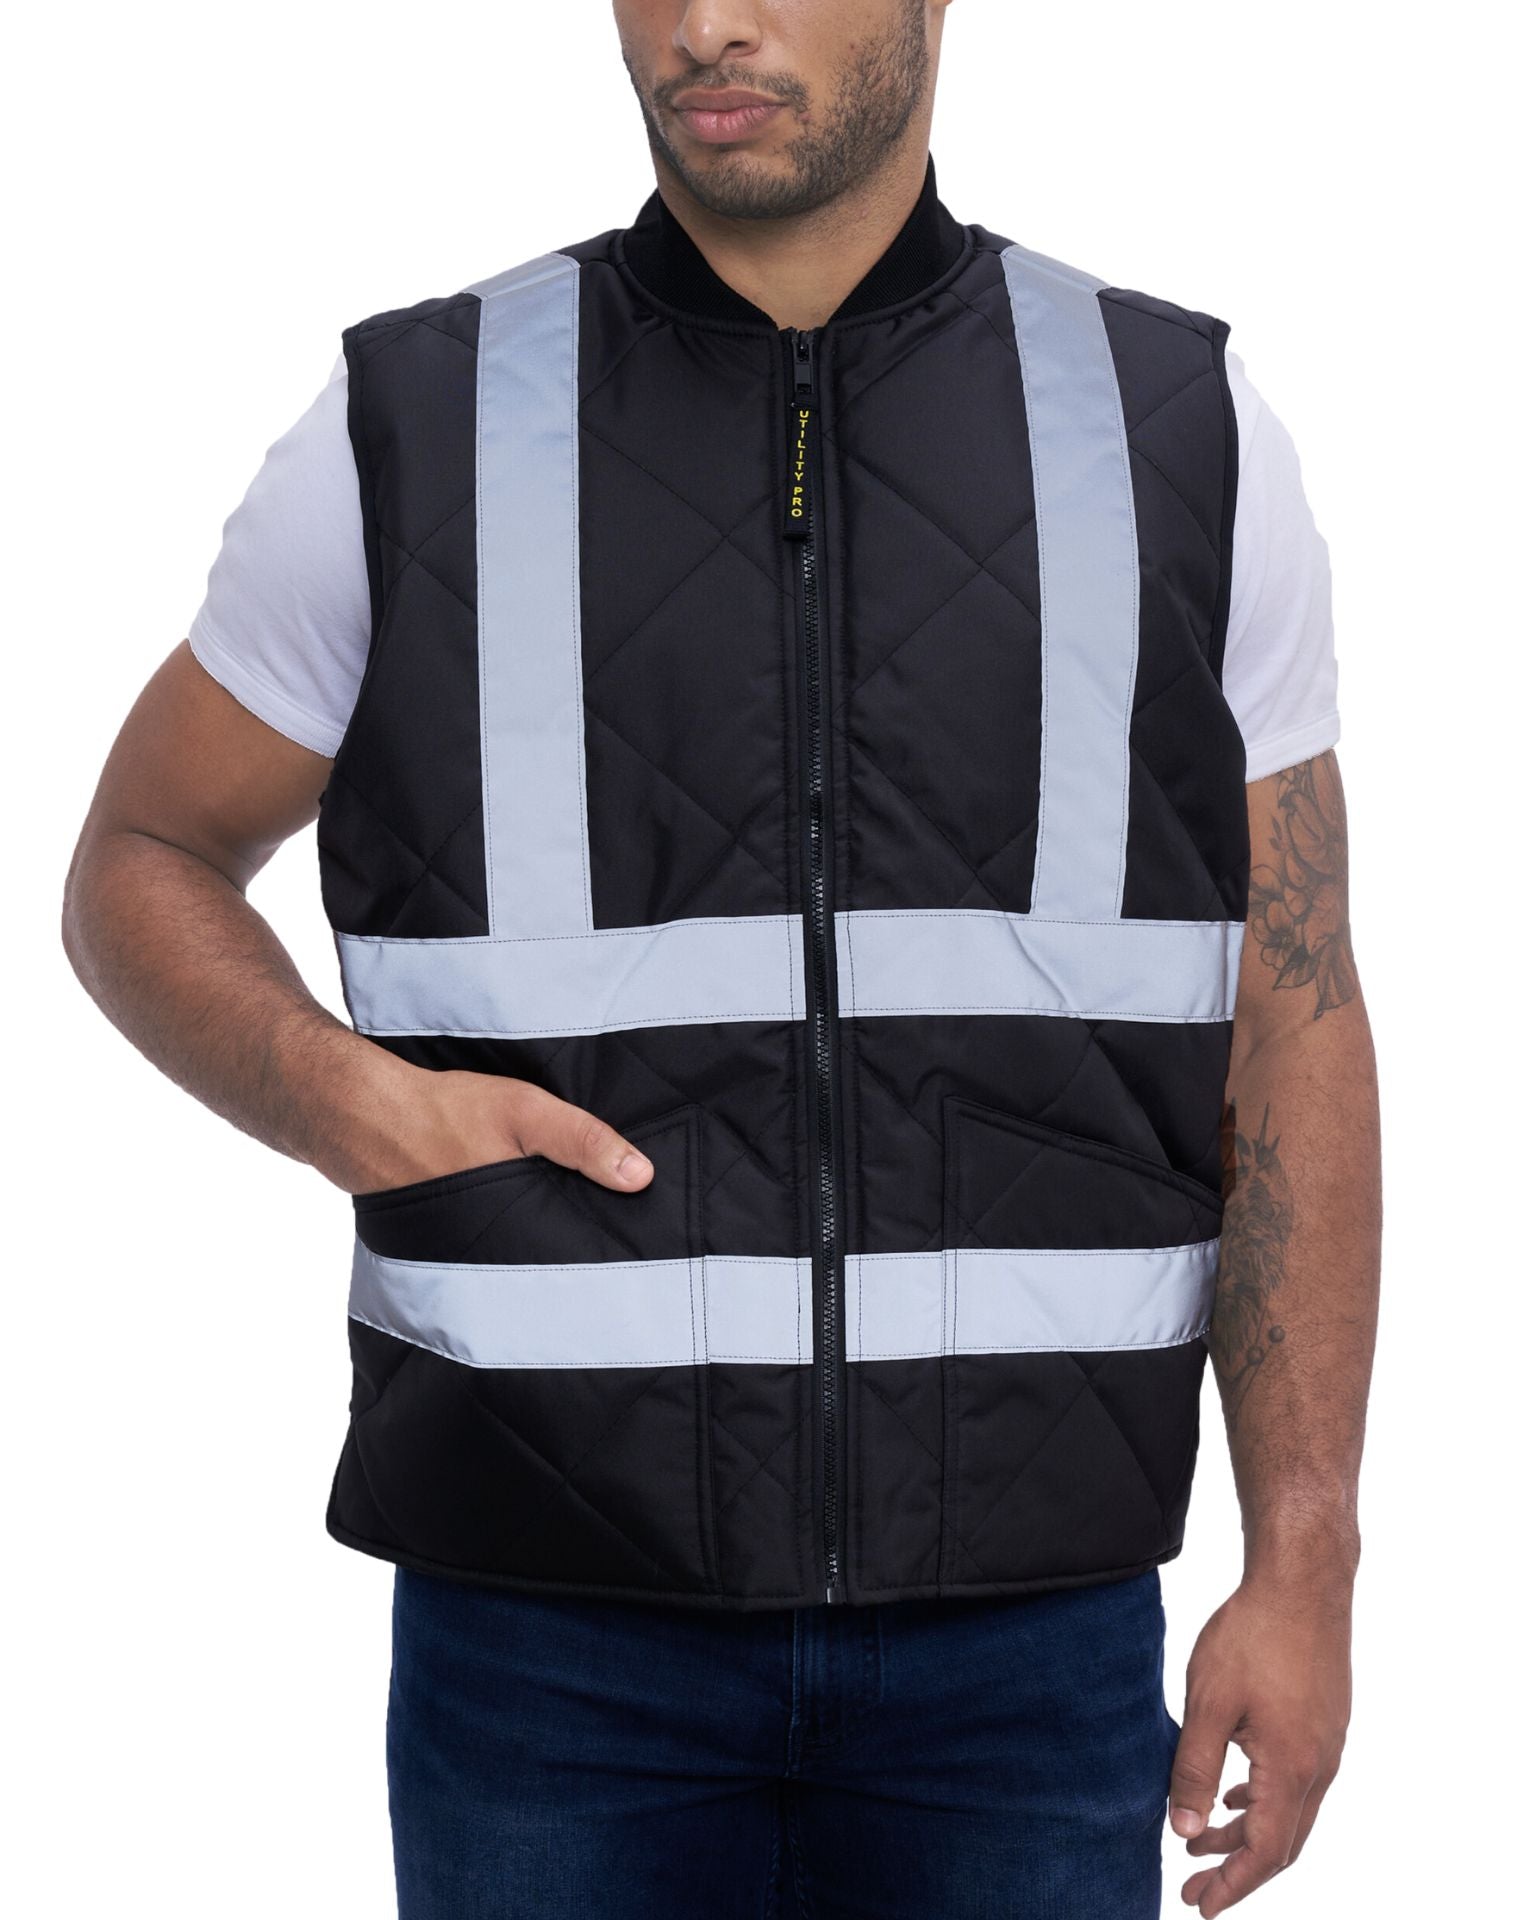 Safety Vests Set of 4